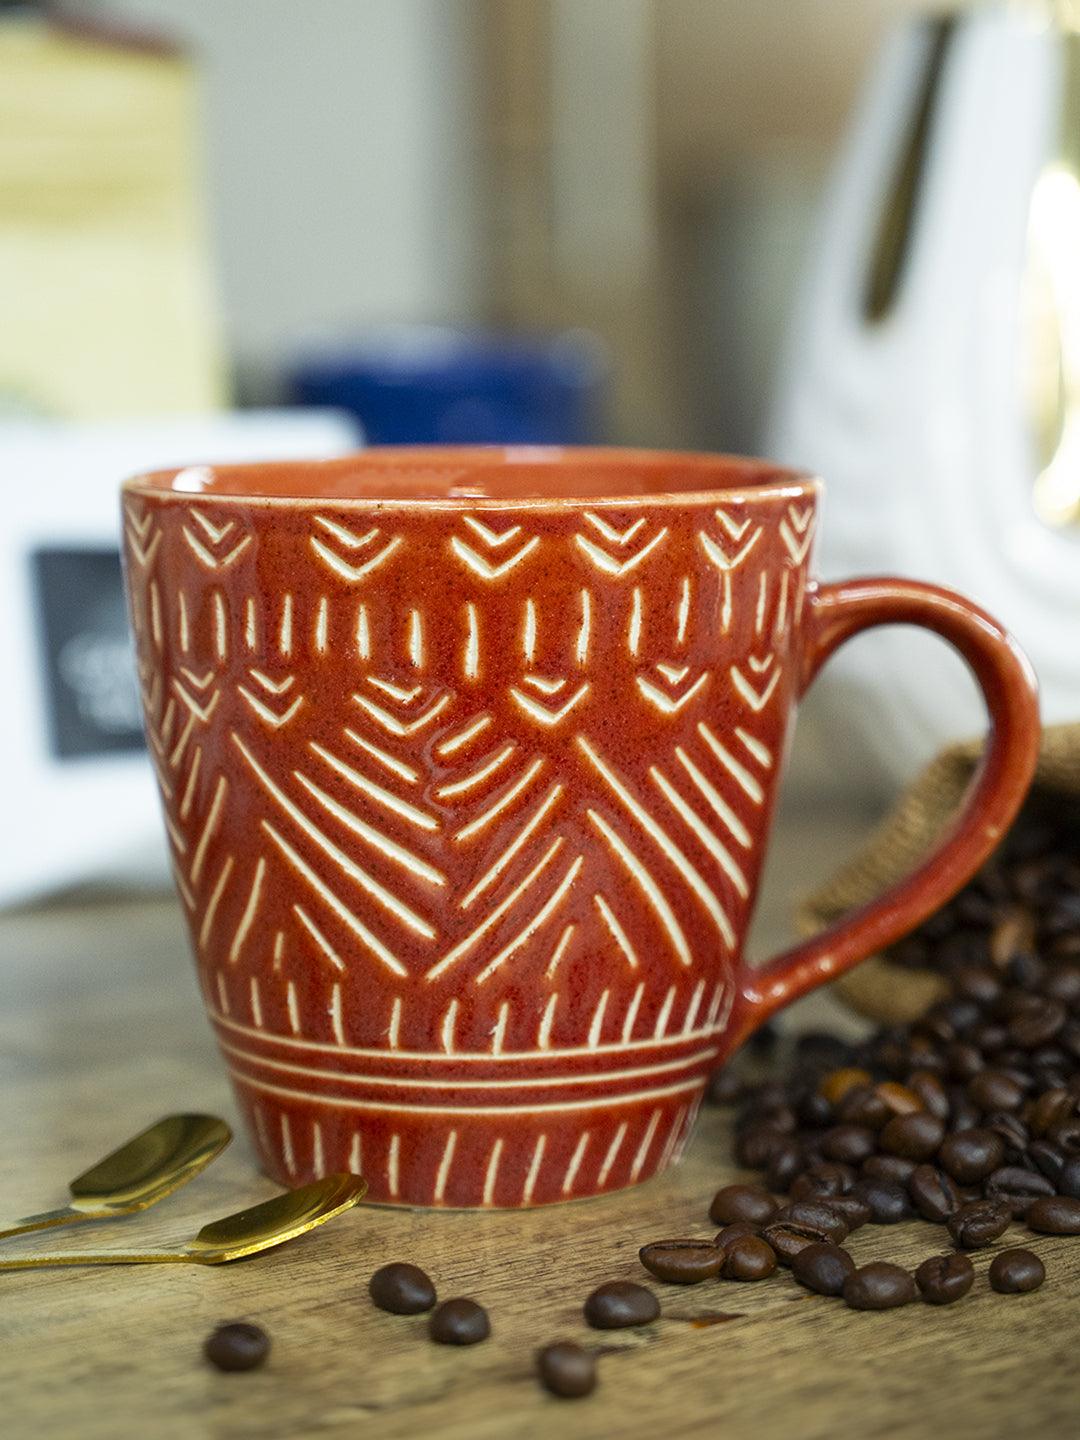 VON CASA Ceramic Coffee Mug - 320 Ml, Red & Engrabed - MARKET 99